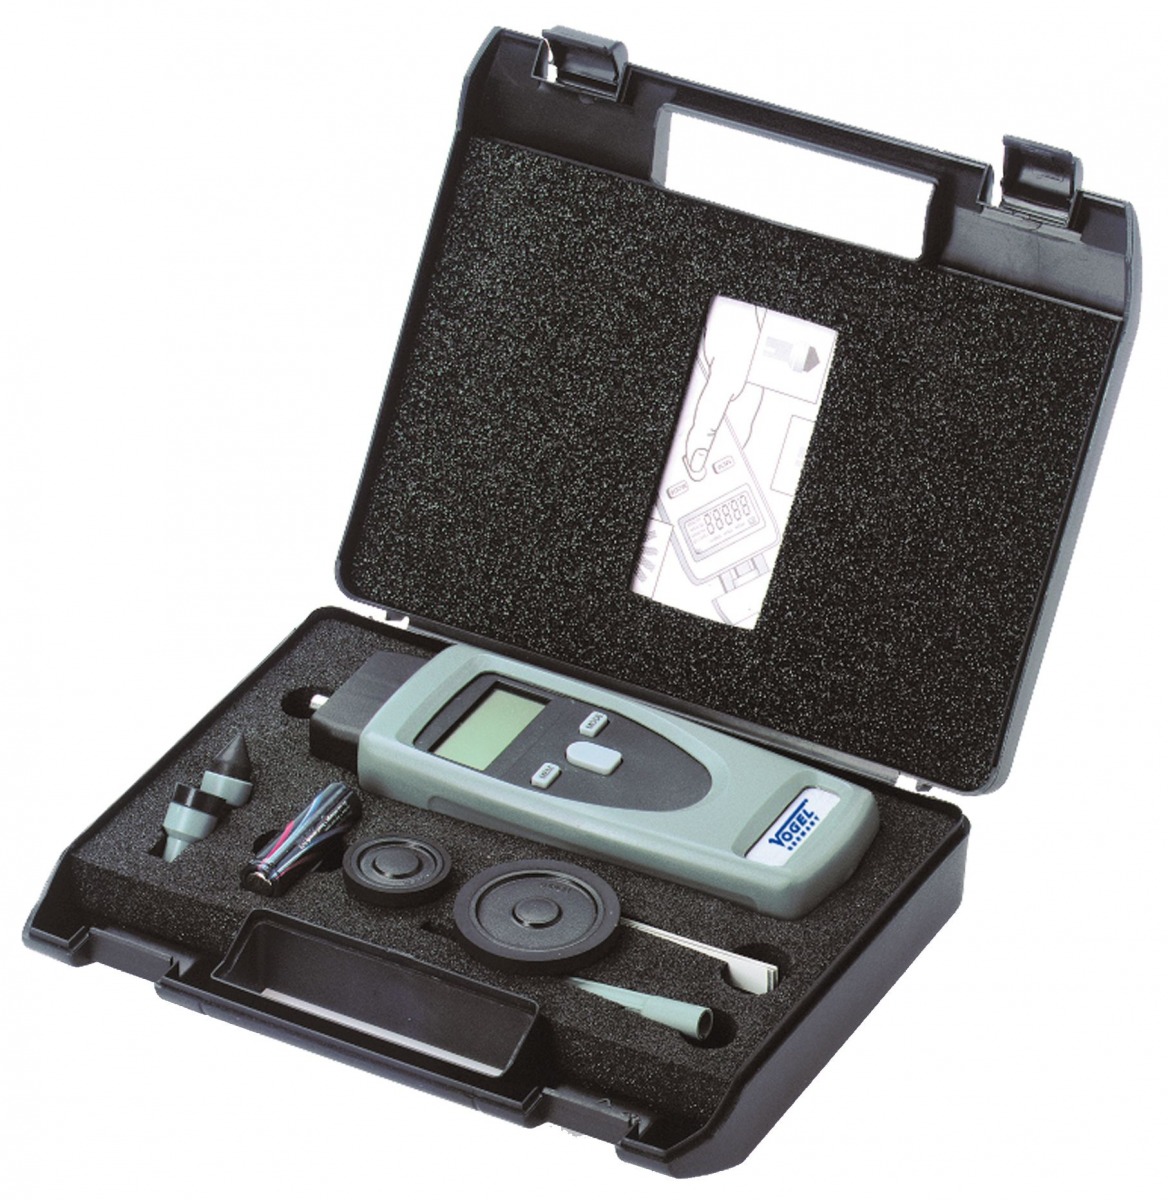 Tacómetro manual electrónico digital (Medidor RPM) VOG-270160 | TACOMETRO